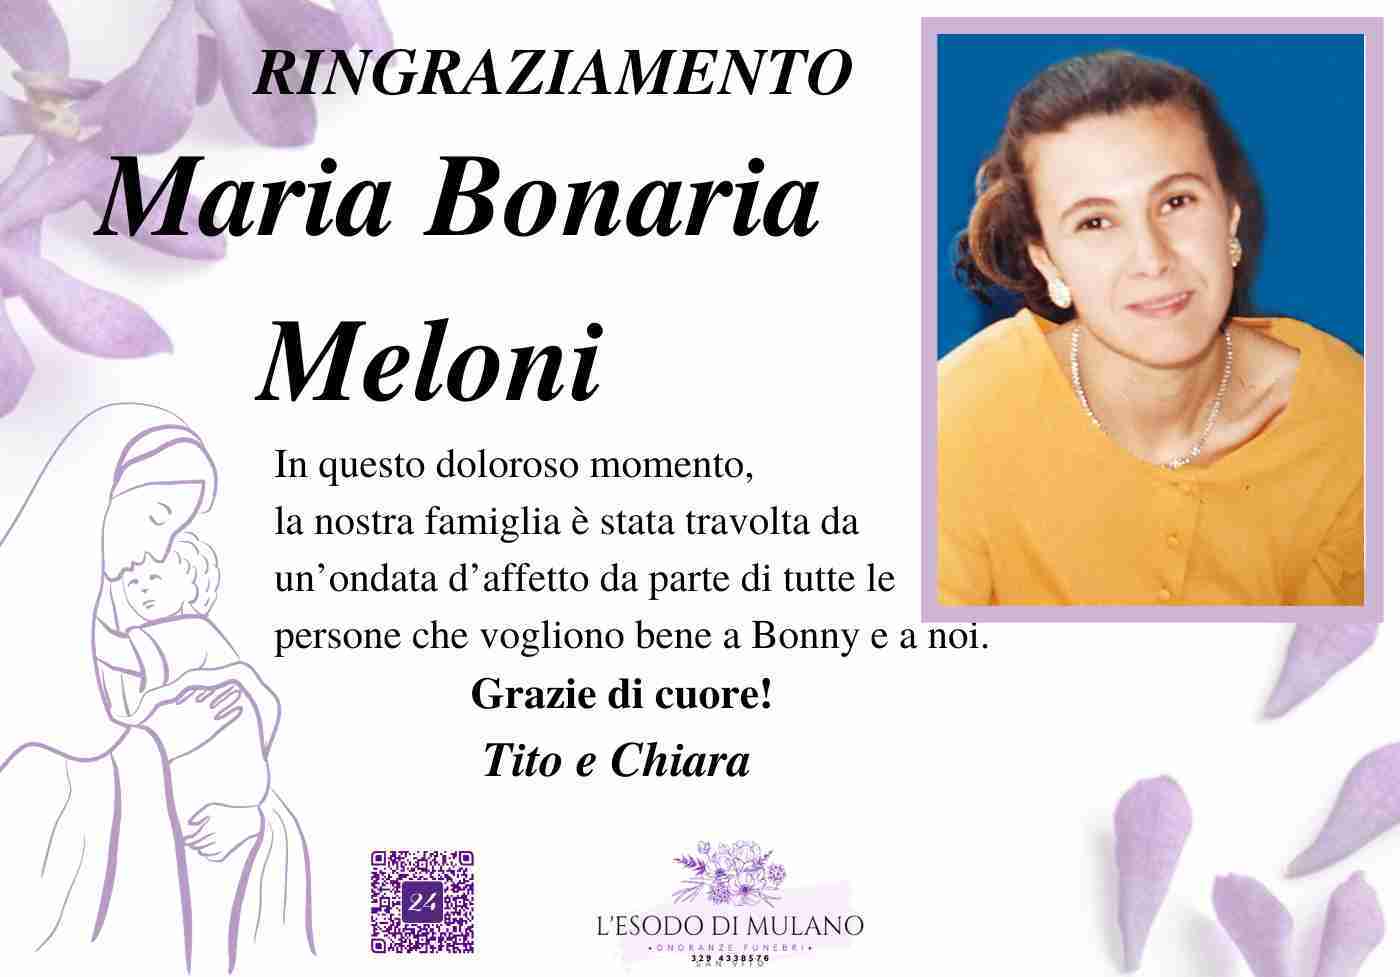 Maria Bonaria Meloni